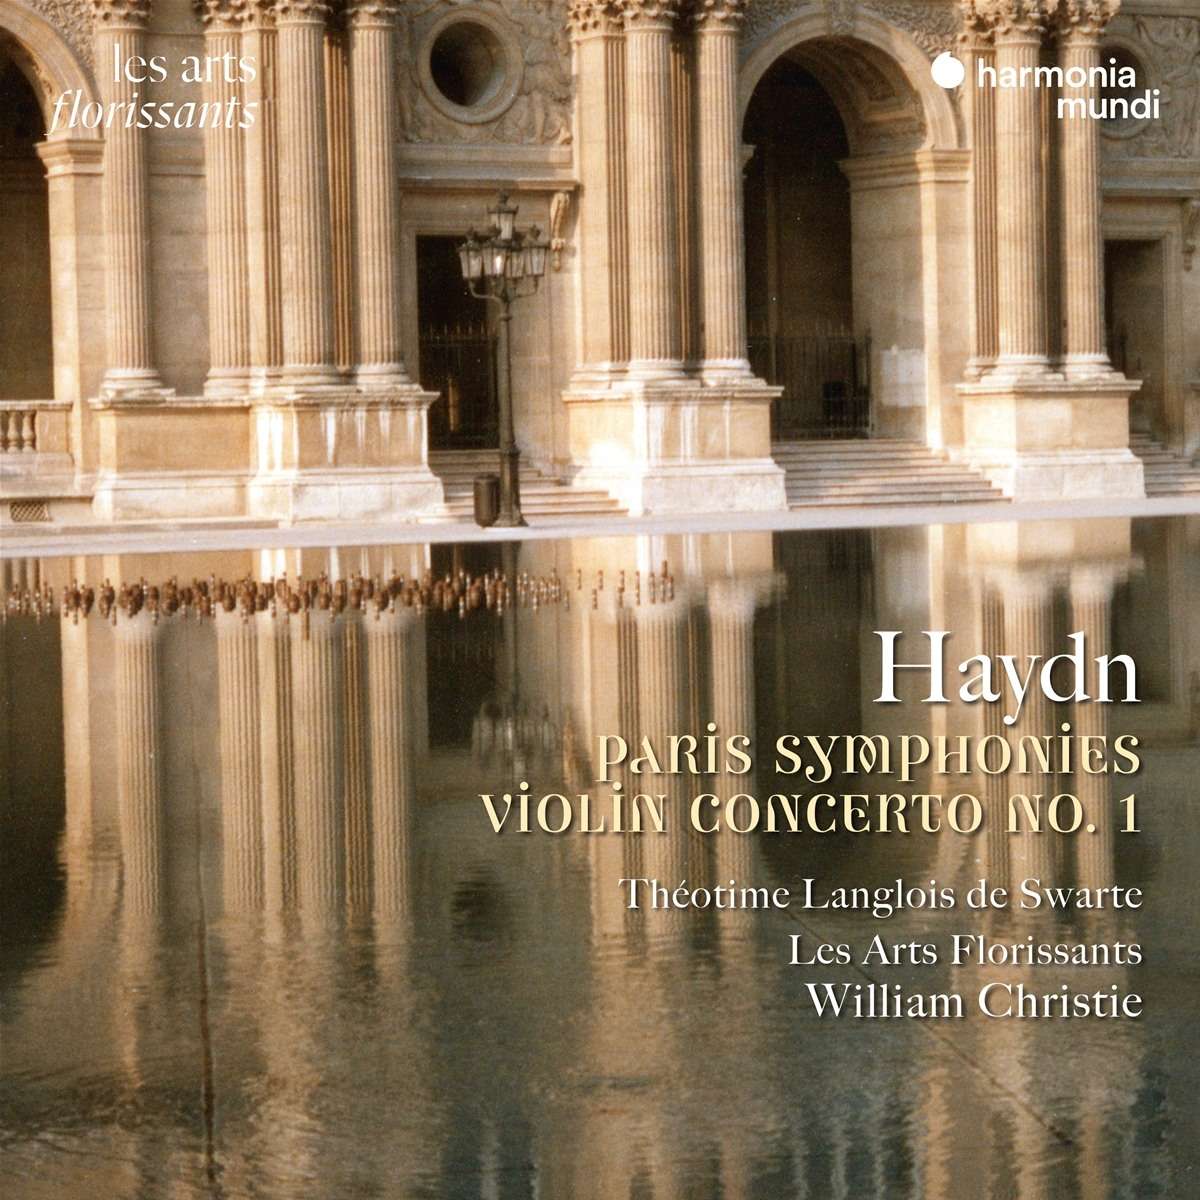 Theotime Langlois de Swarte / Les Arts Florissants / William Christie - Paris symphonies / Violin concerto no. 1